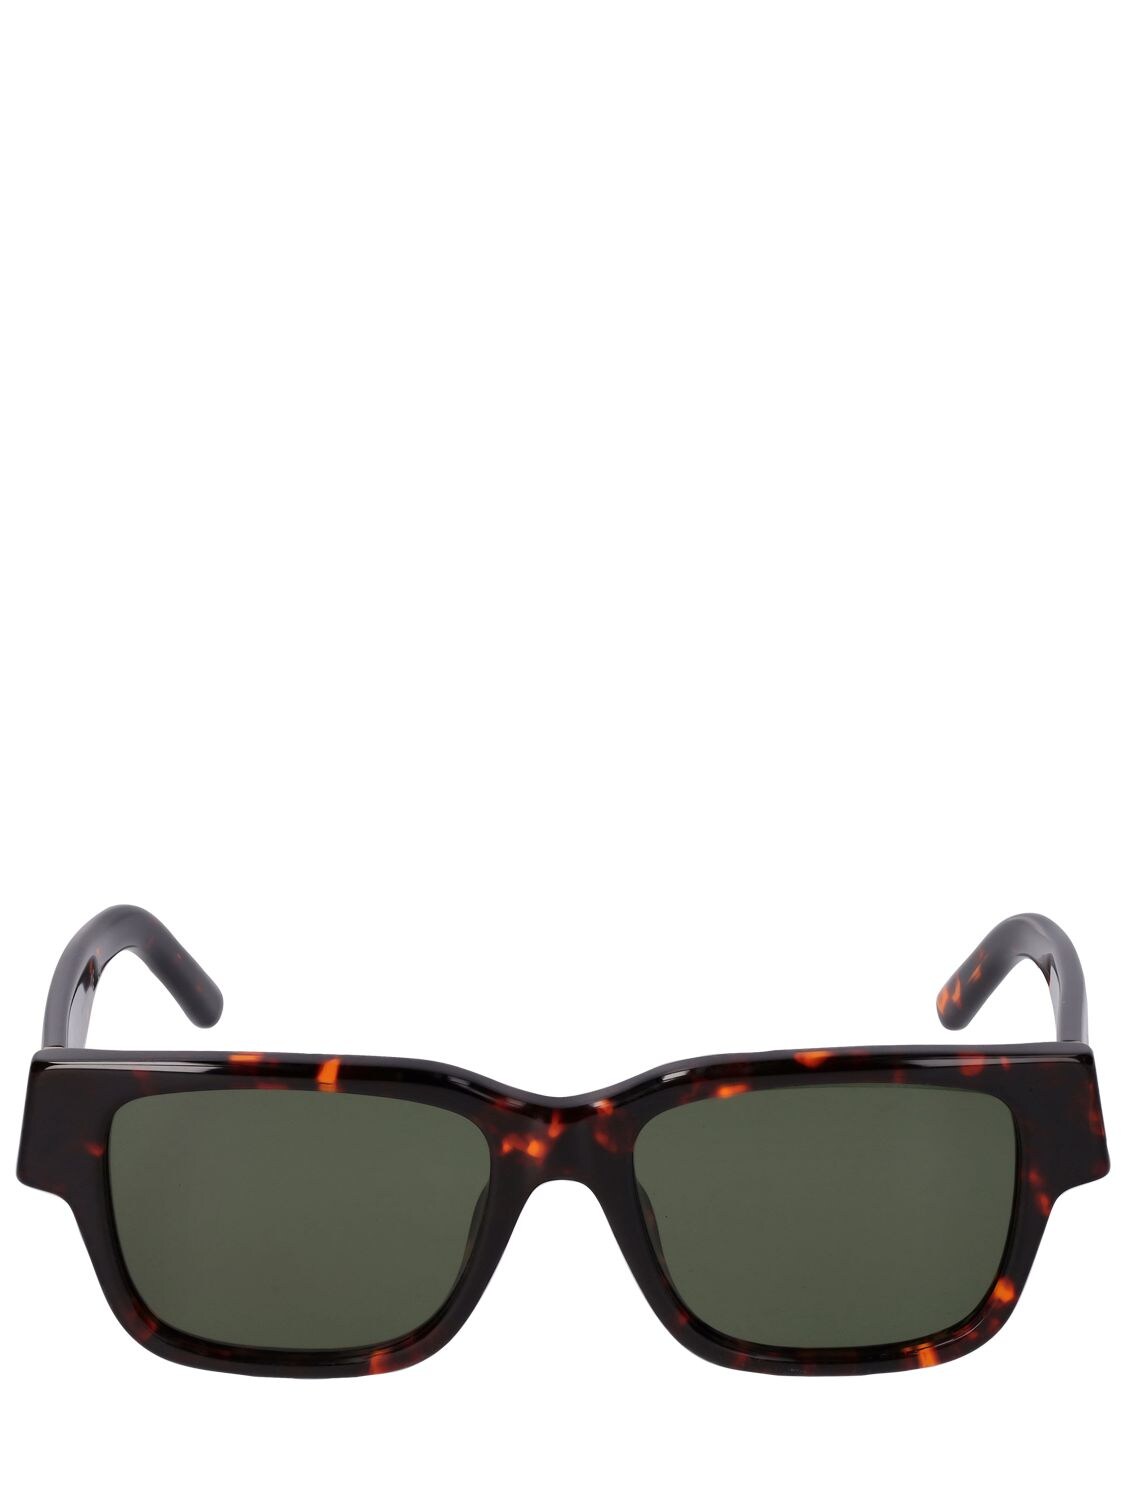 Newport Squared Acetate Sunglasses